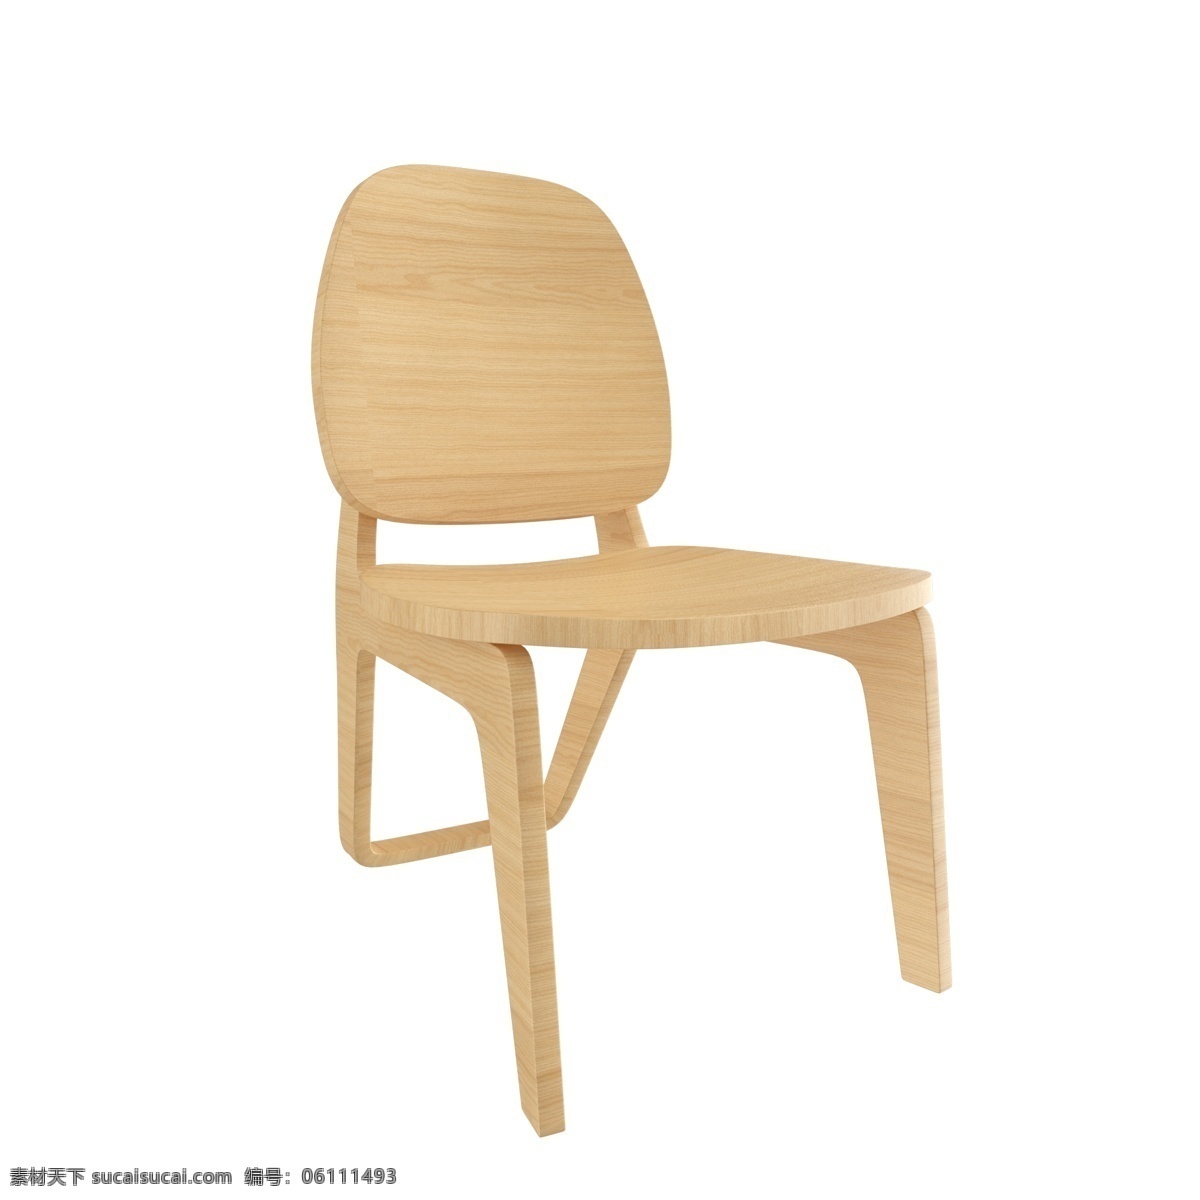 简约 办公椅 椅子 靠背椅 简约椅子 实木椅子 木头椅子 凳子 坐凳 家具 实木 日式 家居 日式家居 日式家具 简约家居